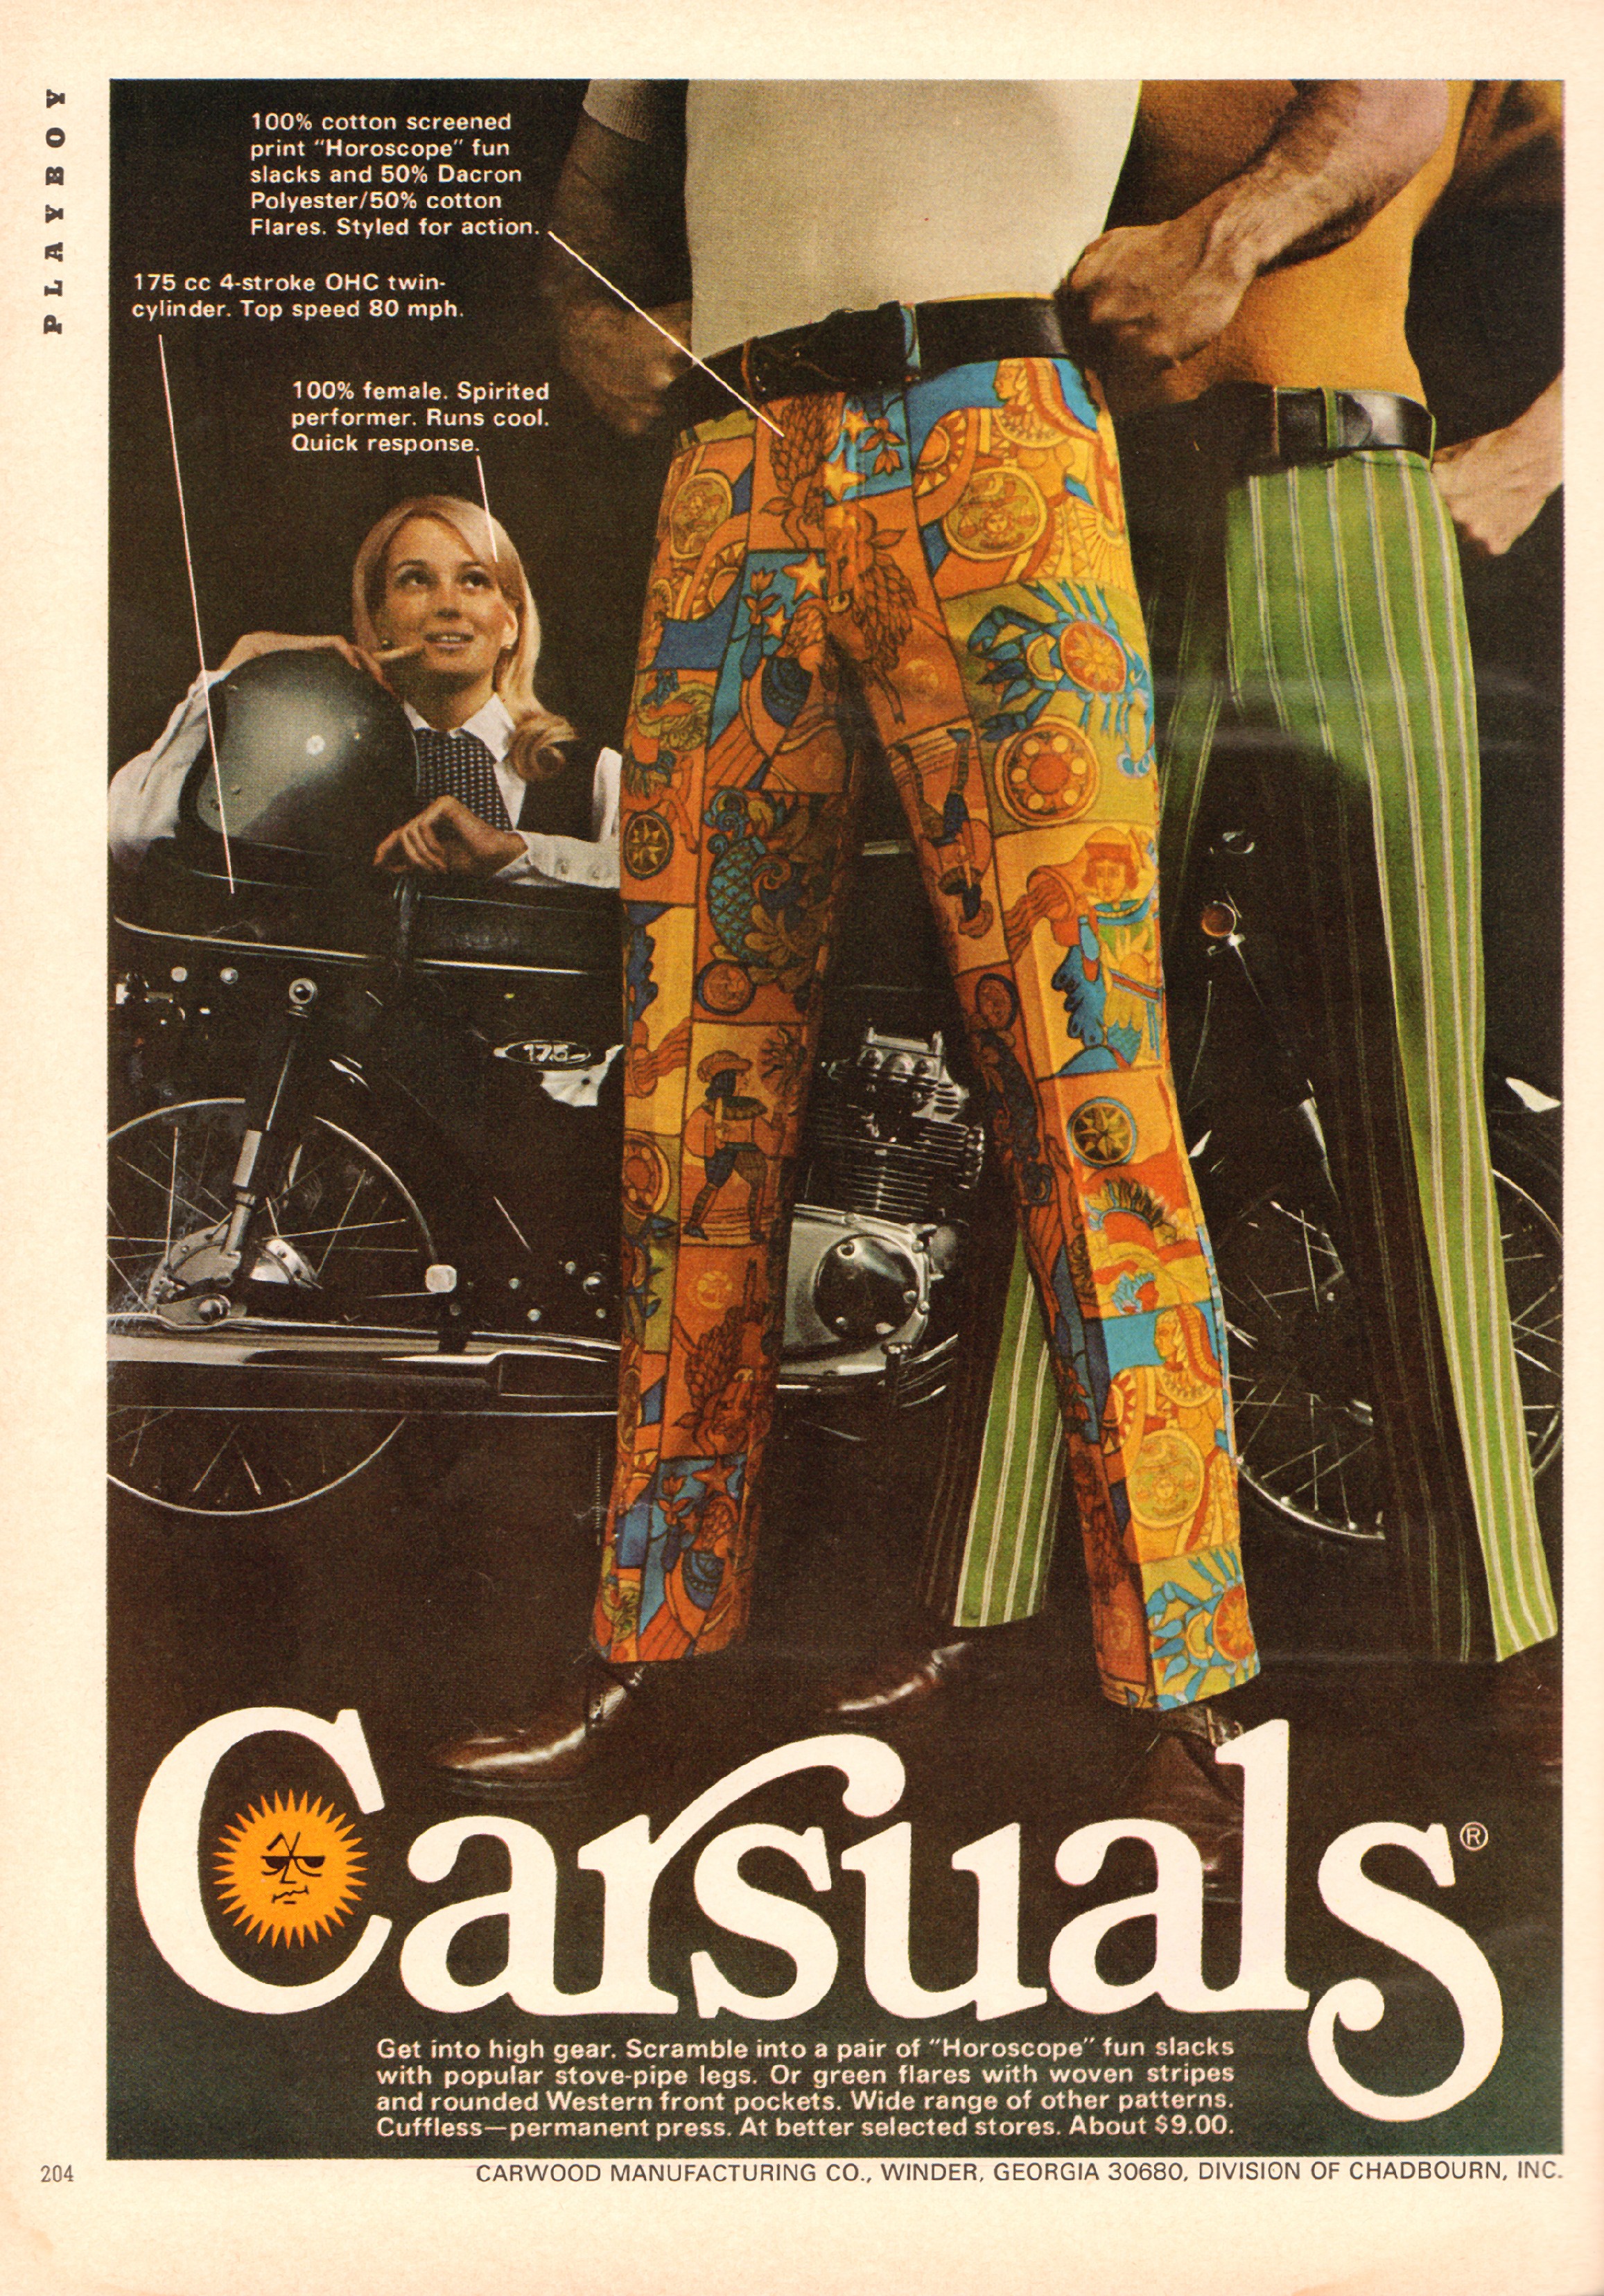 carsuals-slacks-advertisement-playboy-april-1970 - Flashbak